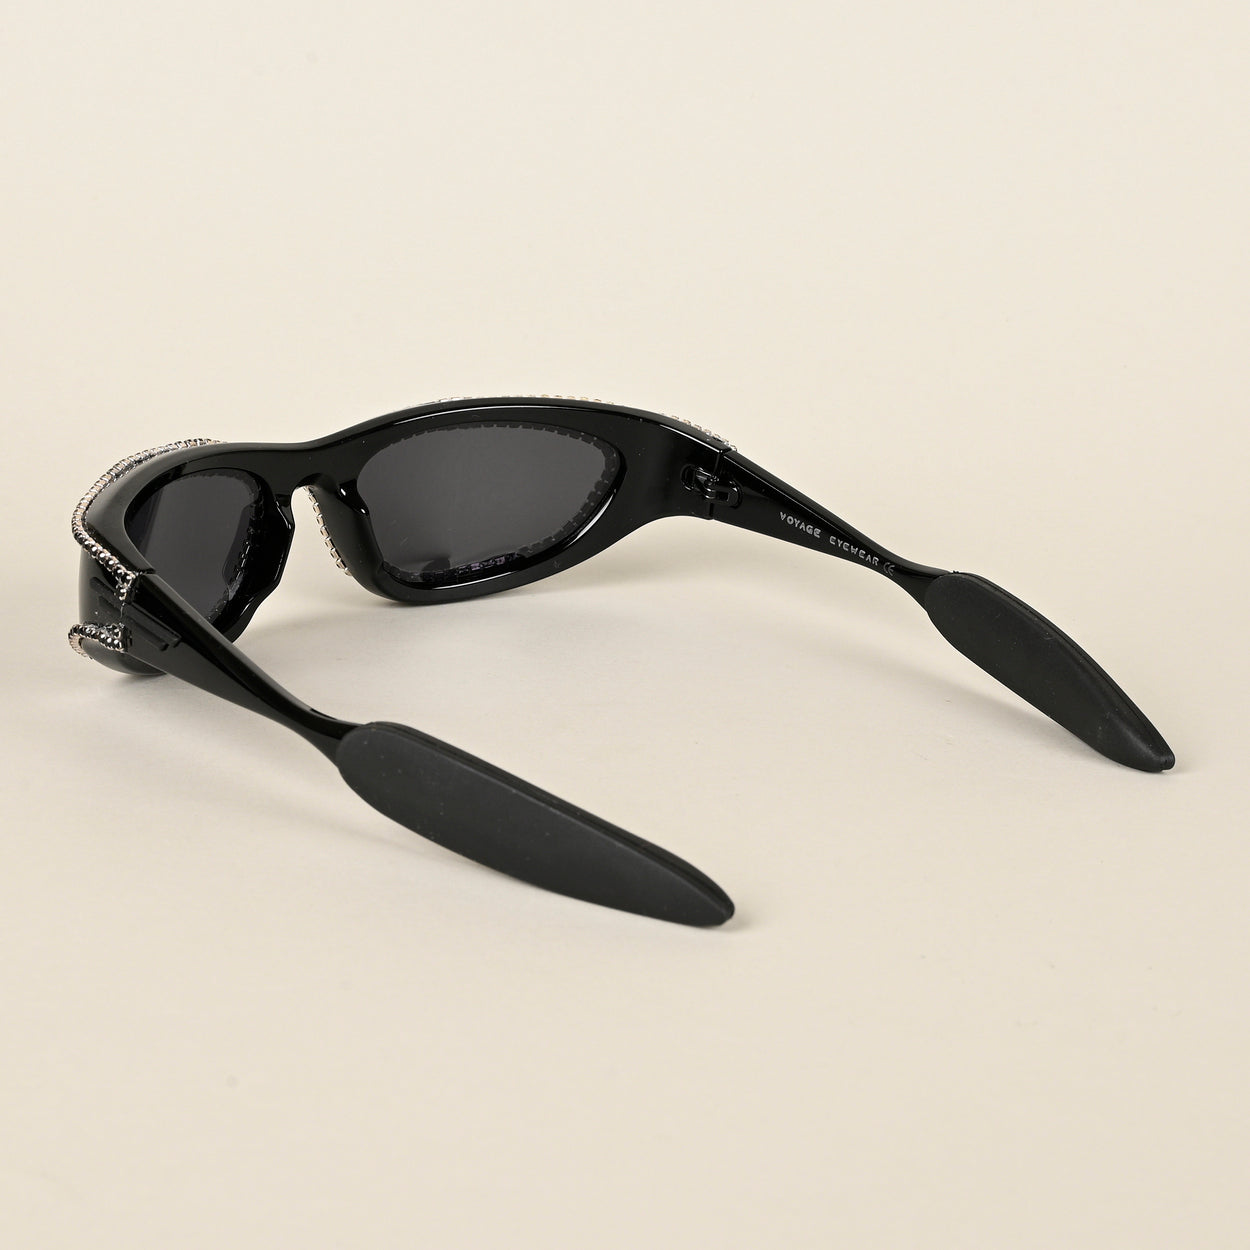 Voyage Black Wrap-Around Polarized Sunglasses for Men & Women (5012PMG4364)